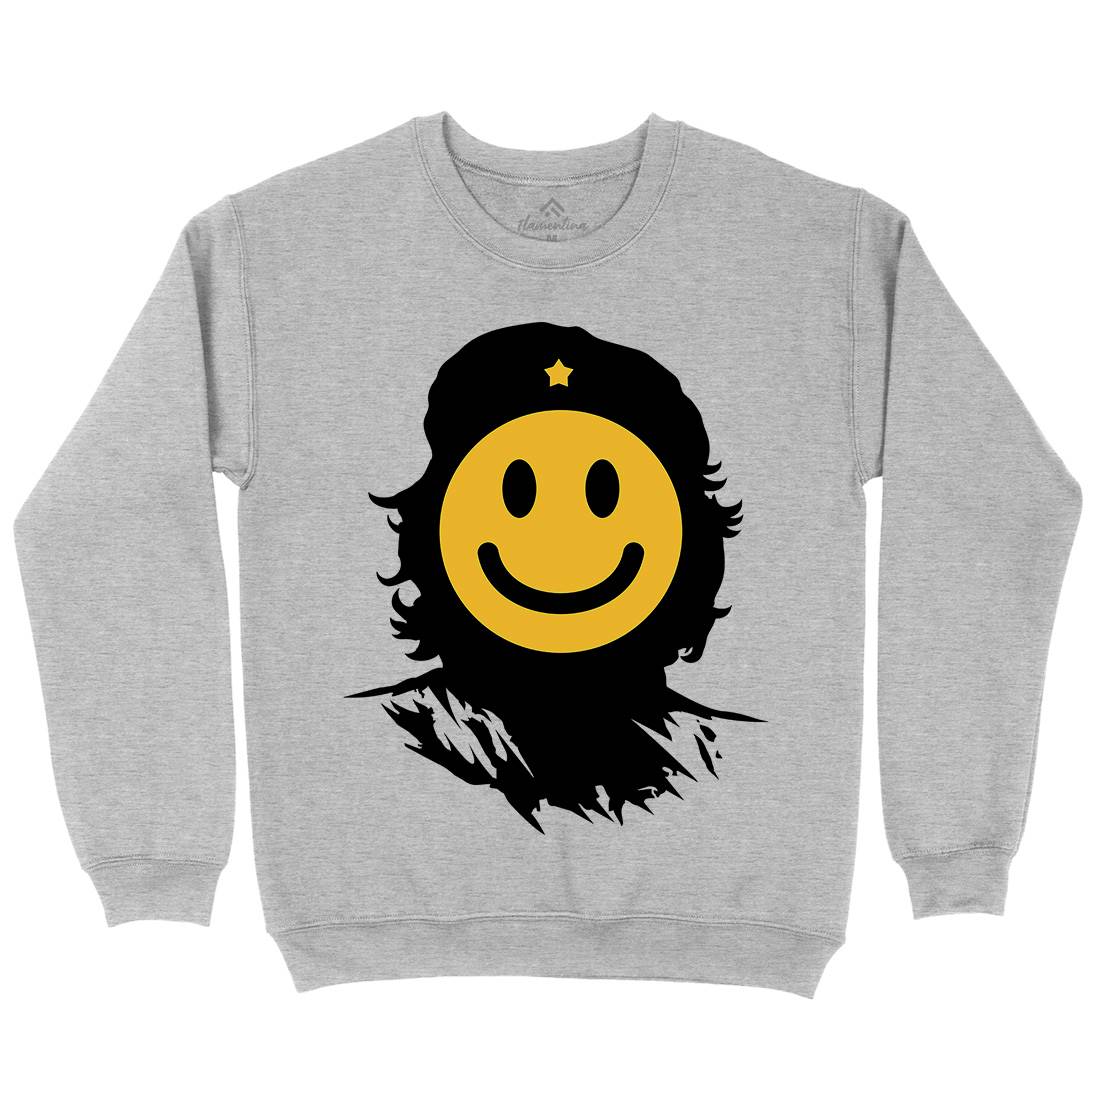 Smile Kids Crew Neck Sweatshirt Retro B016